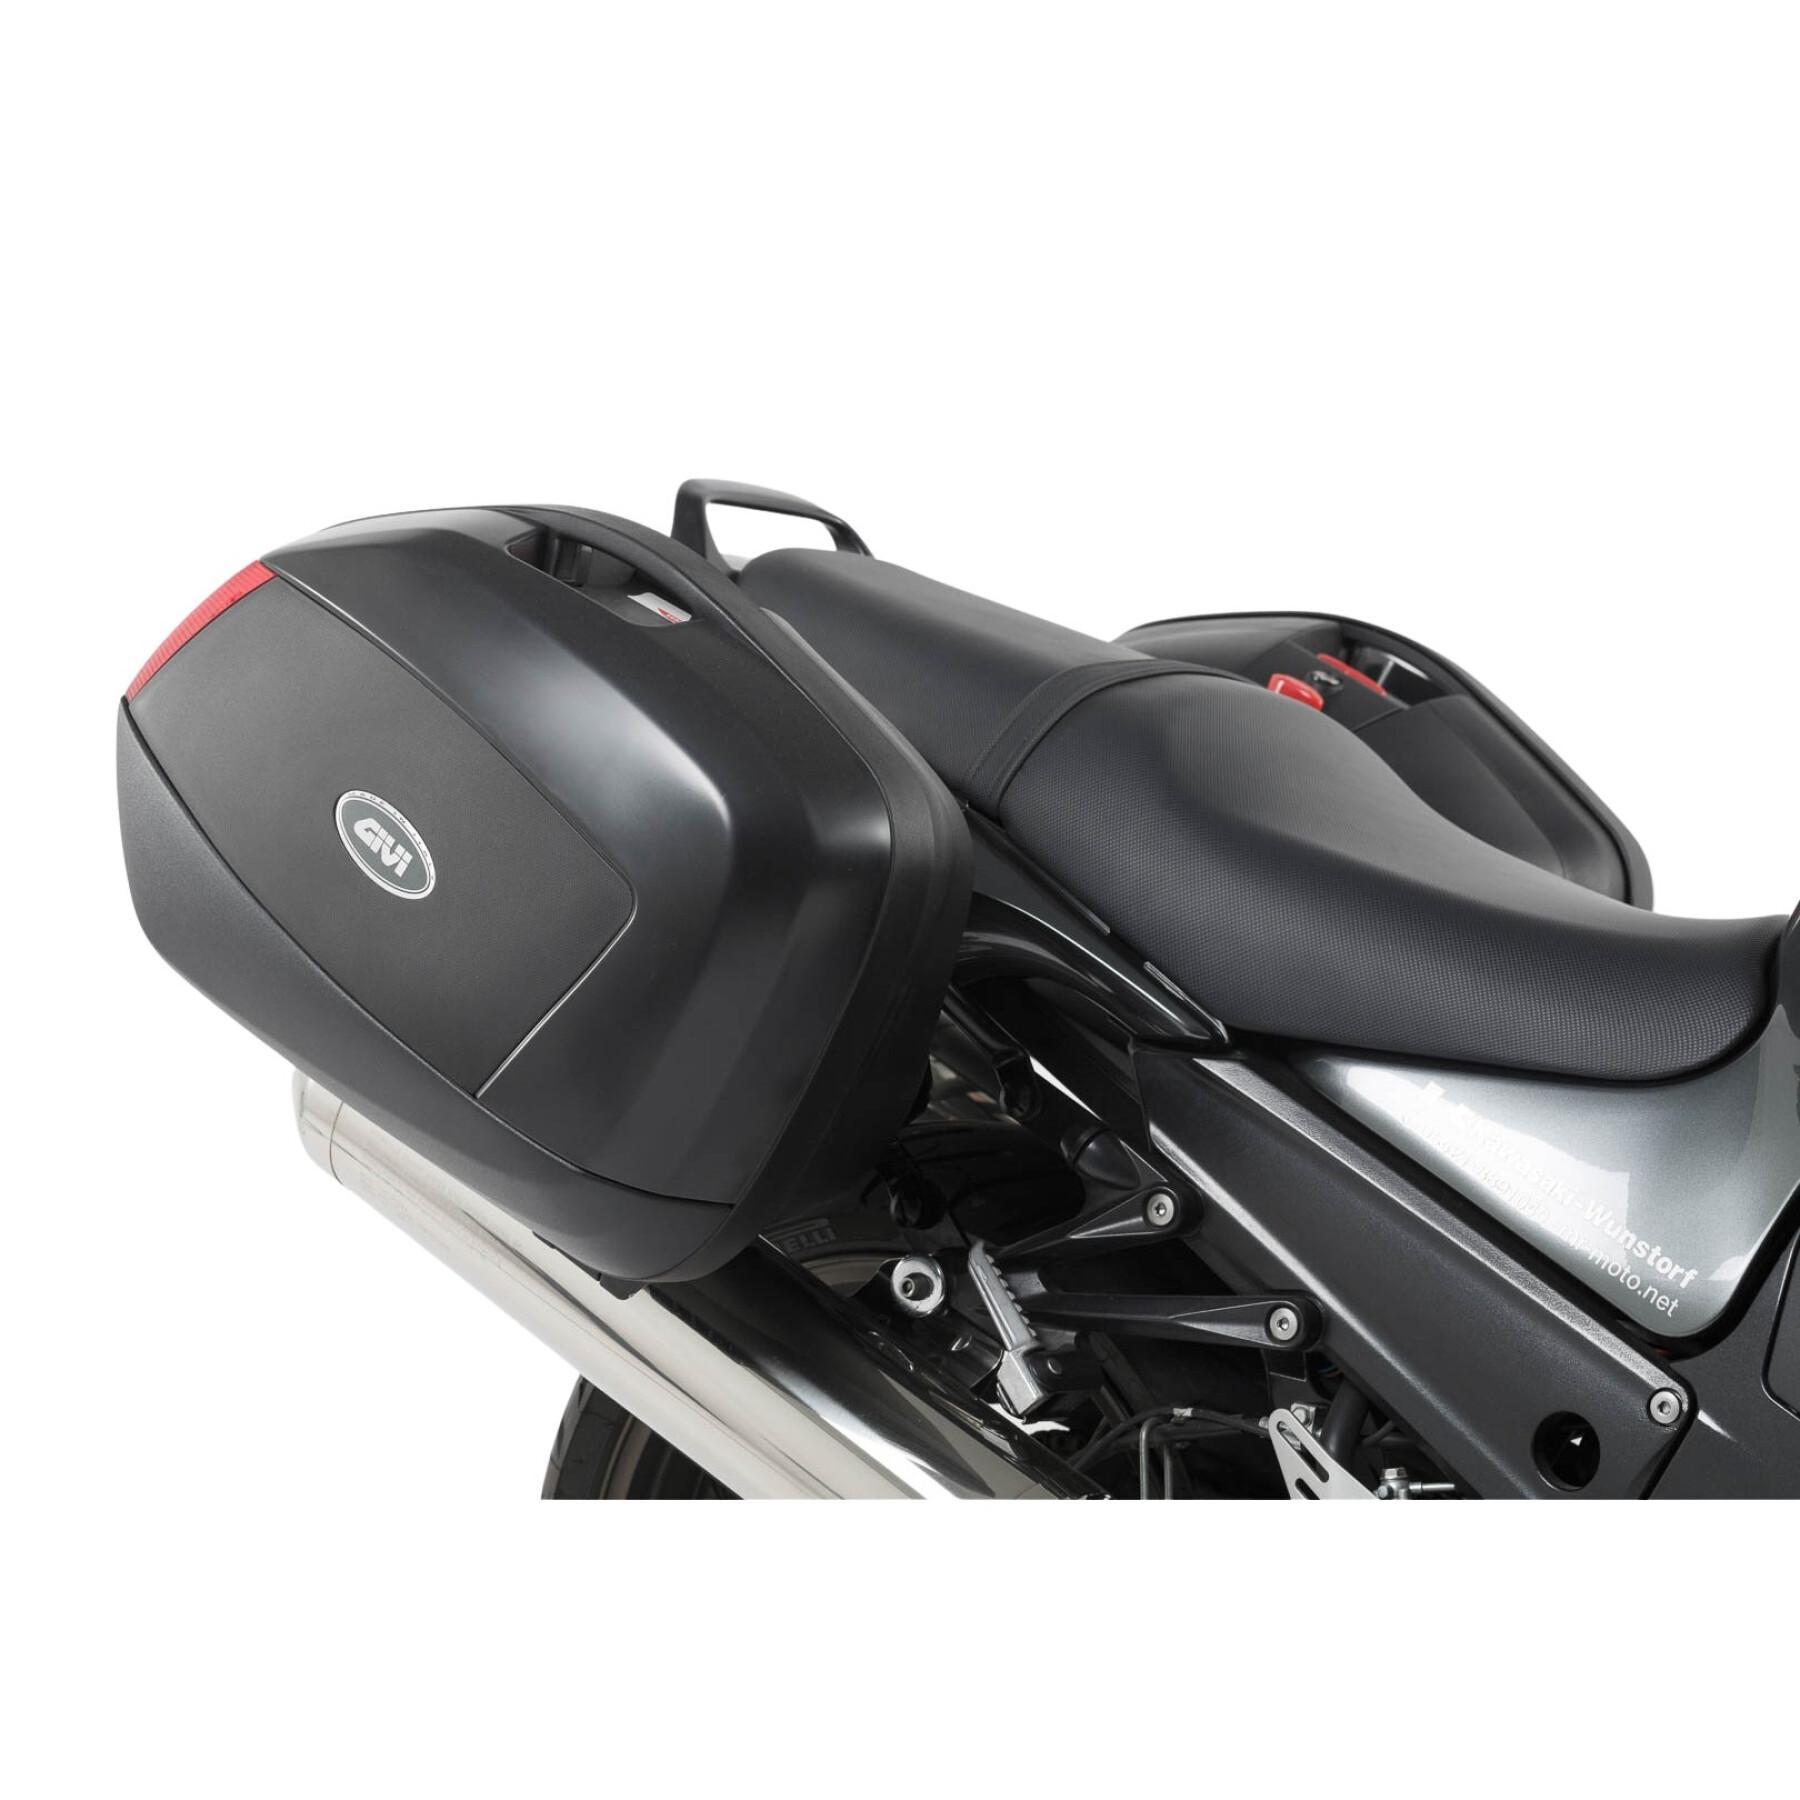 Soporte de la maleta lateral de la moto Sw-Motech Evo Kawasaki Zzr 1400 (06-10)